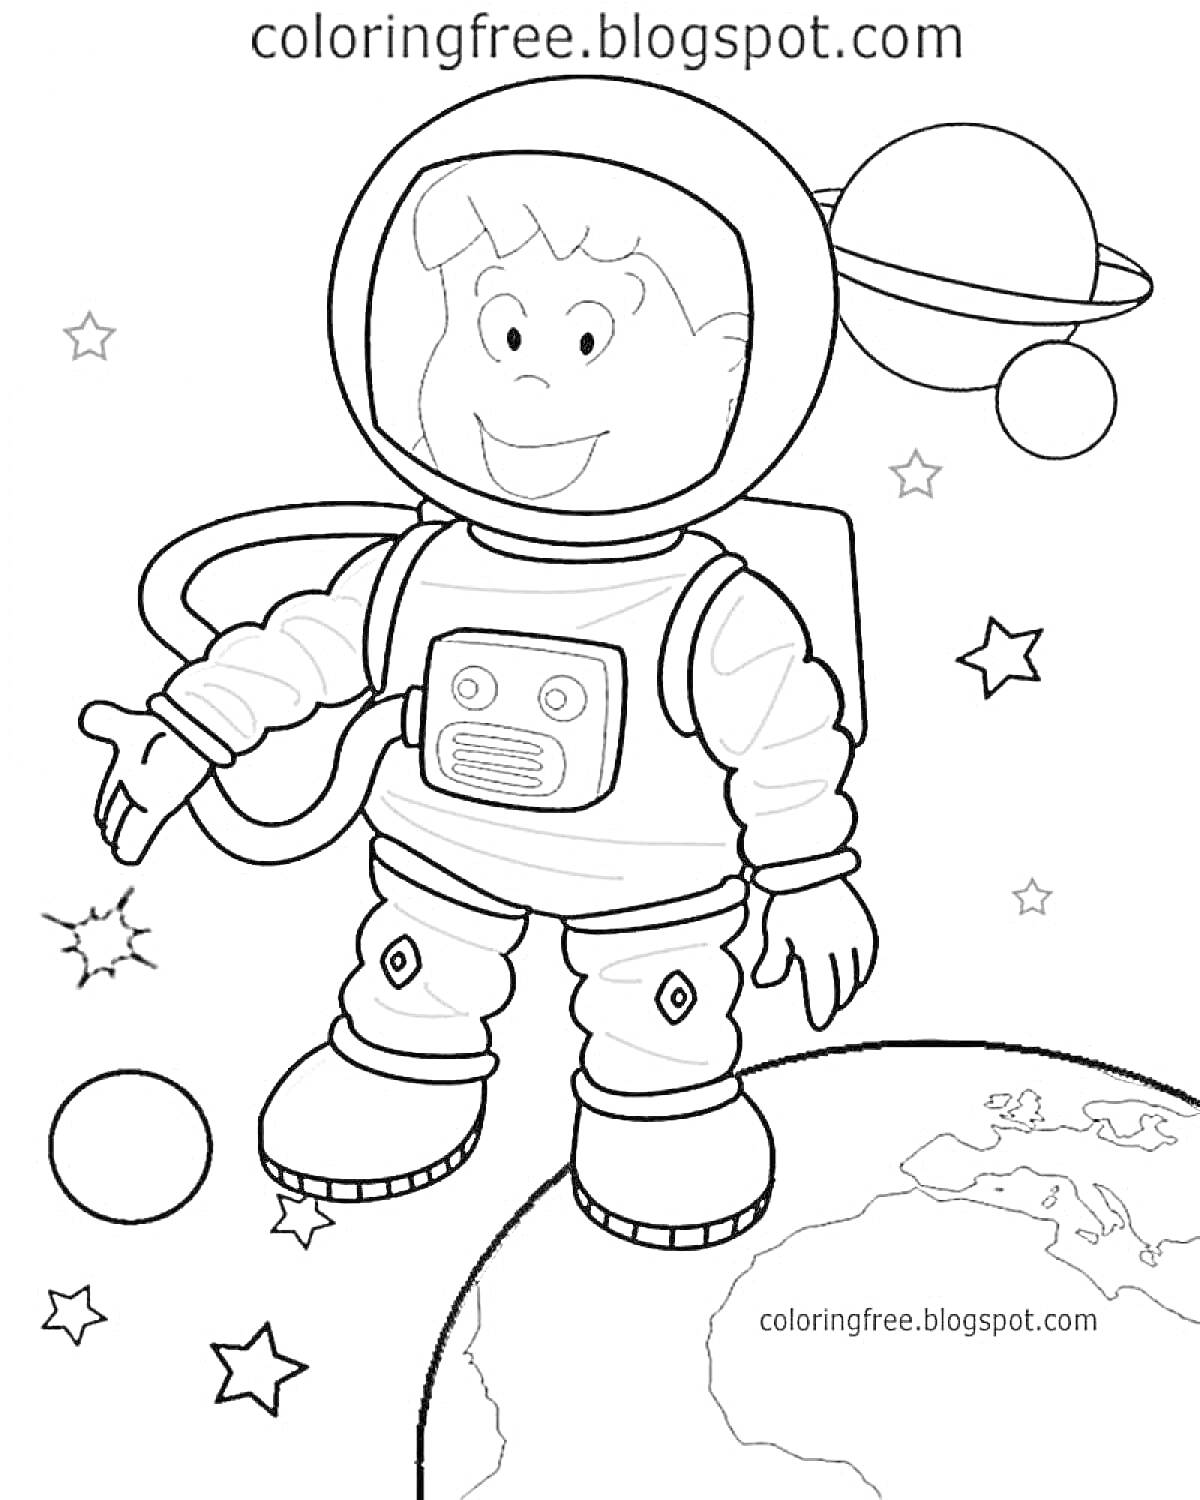 Раскраска Космонавт в космосе, стоящий на планете Земля, с окружающими звездами и планетами